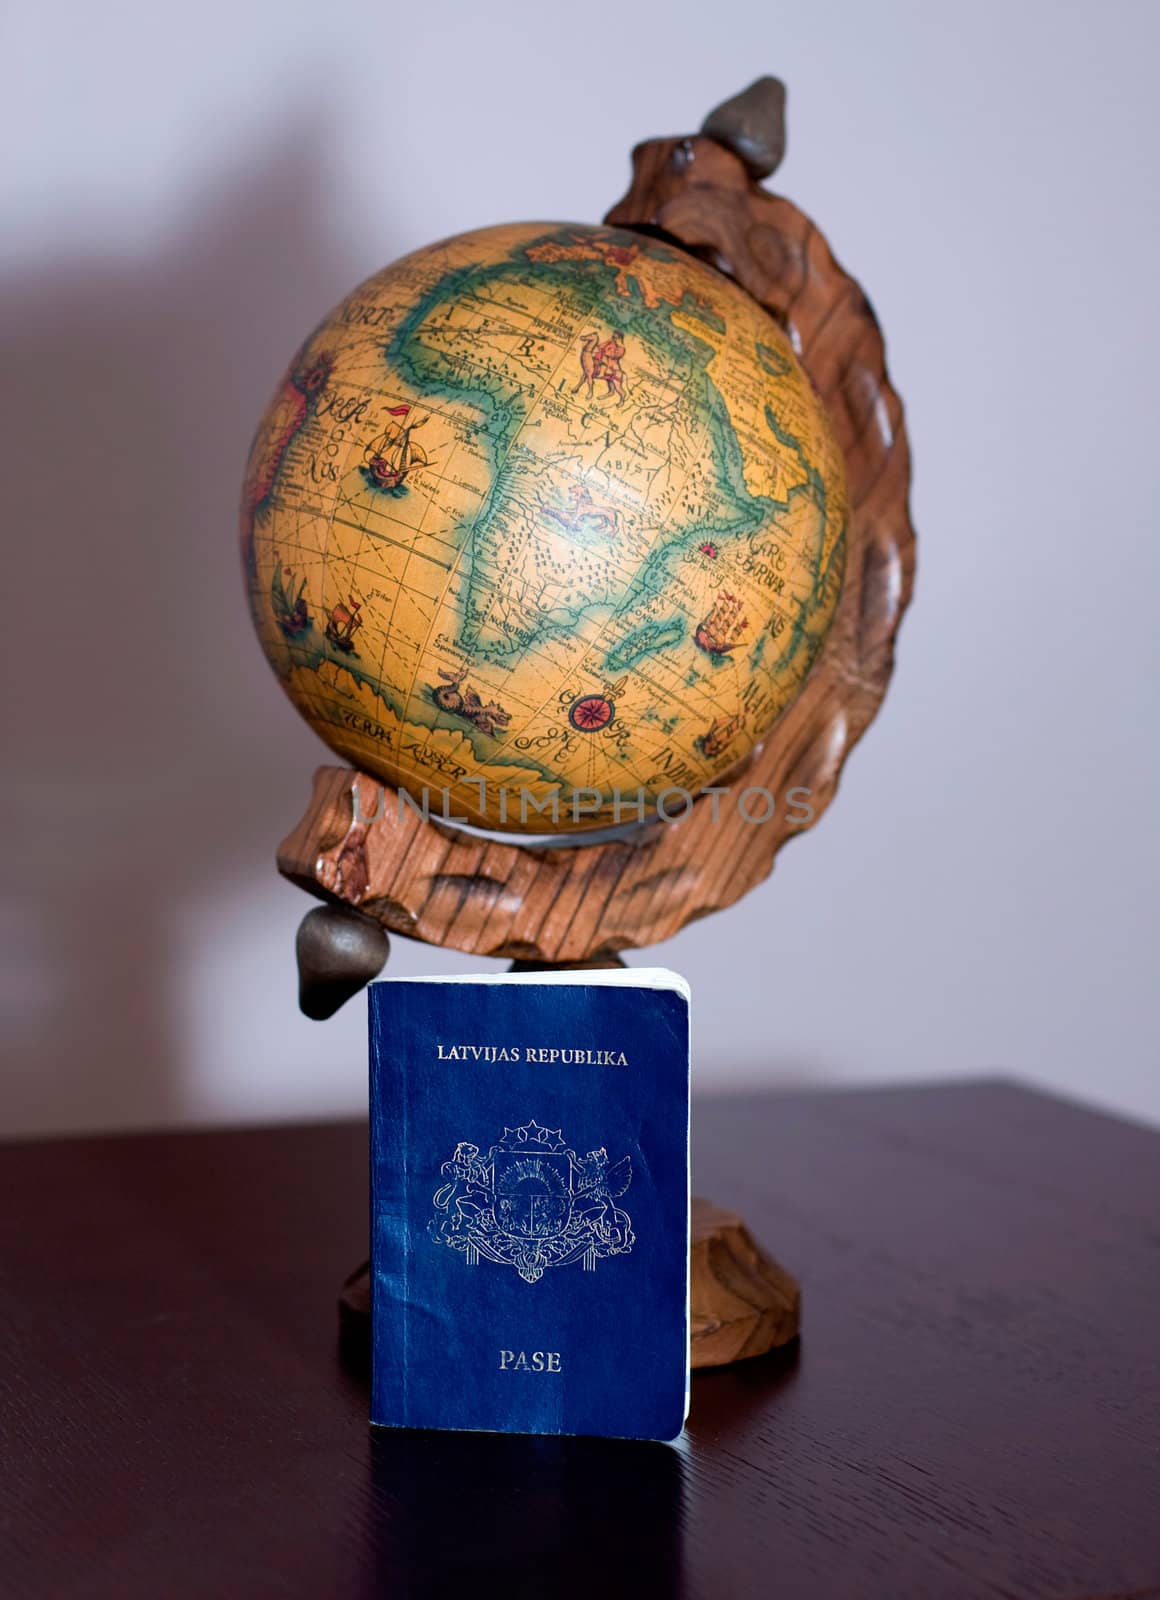 The globe and the passport travel world